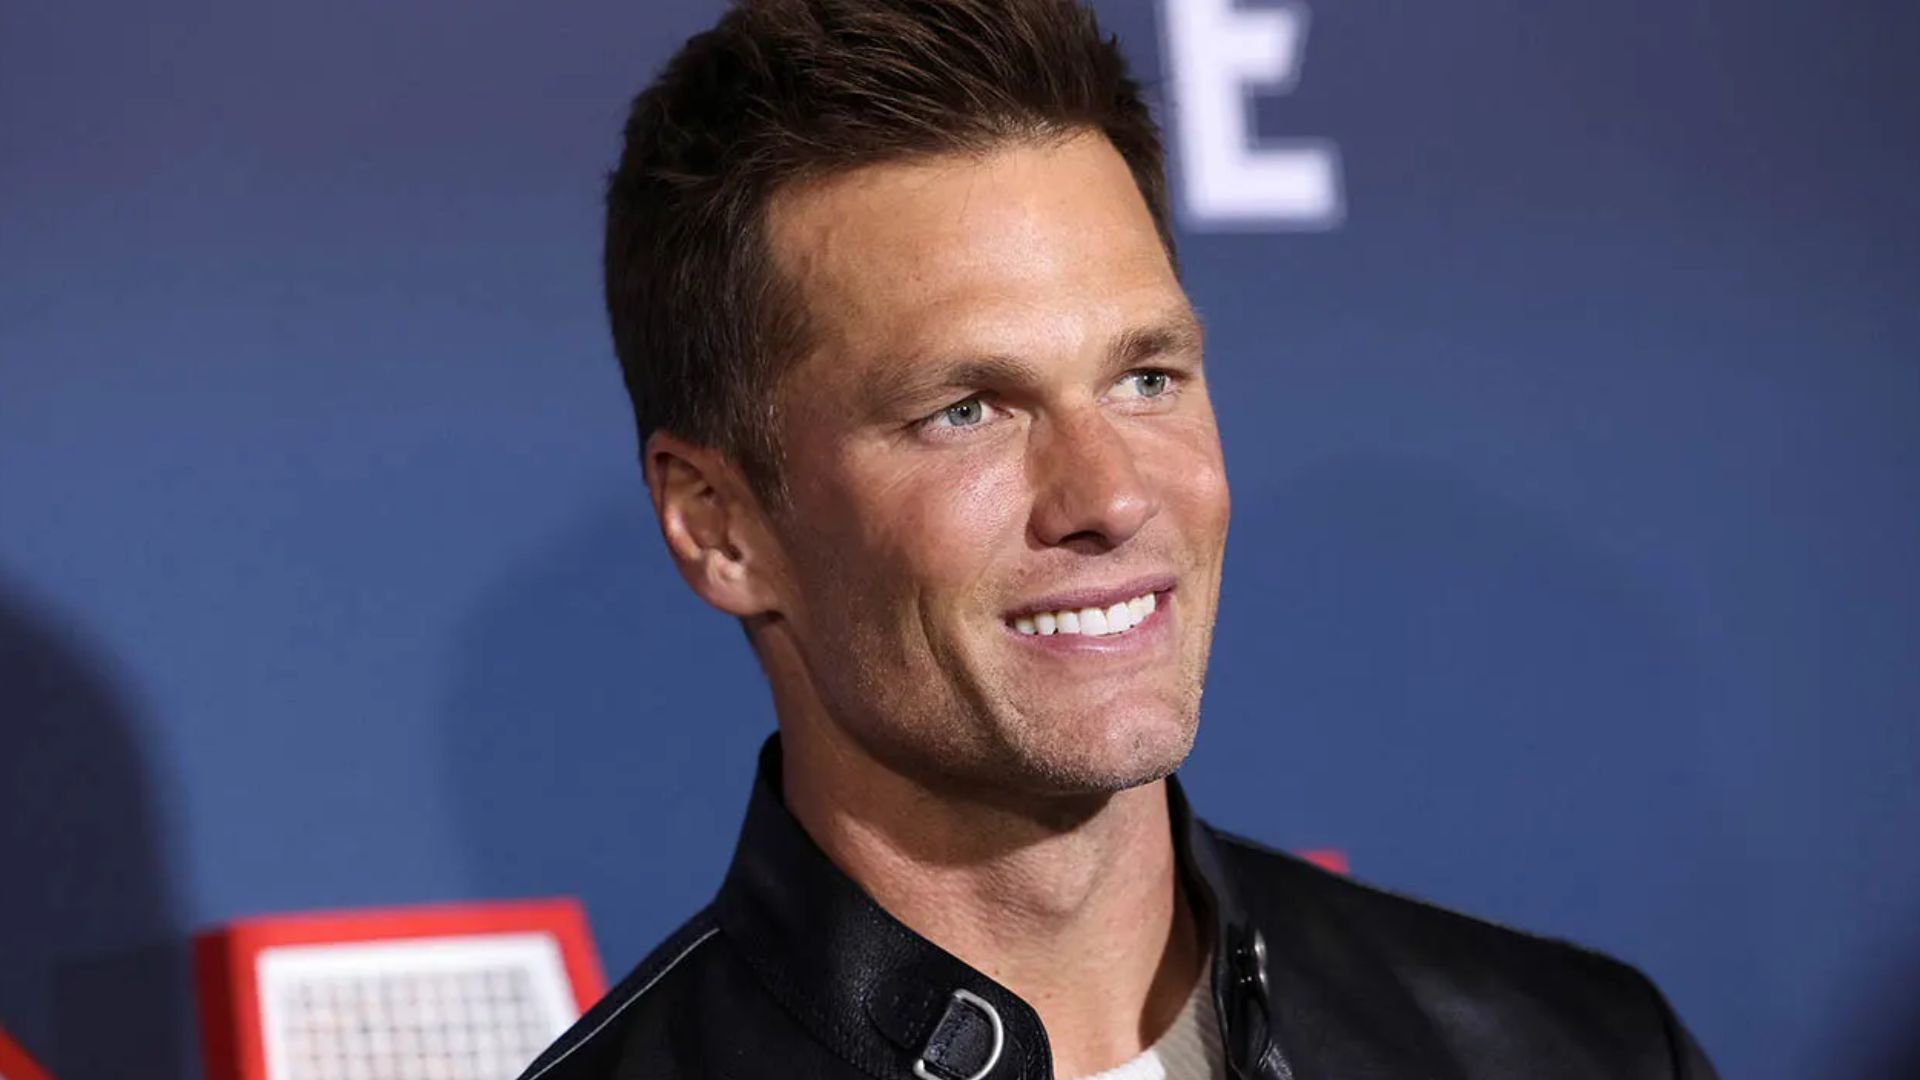 Tom Brady Smiling